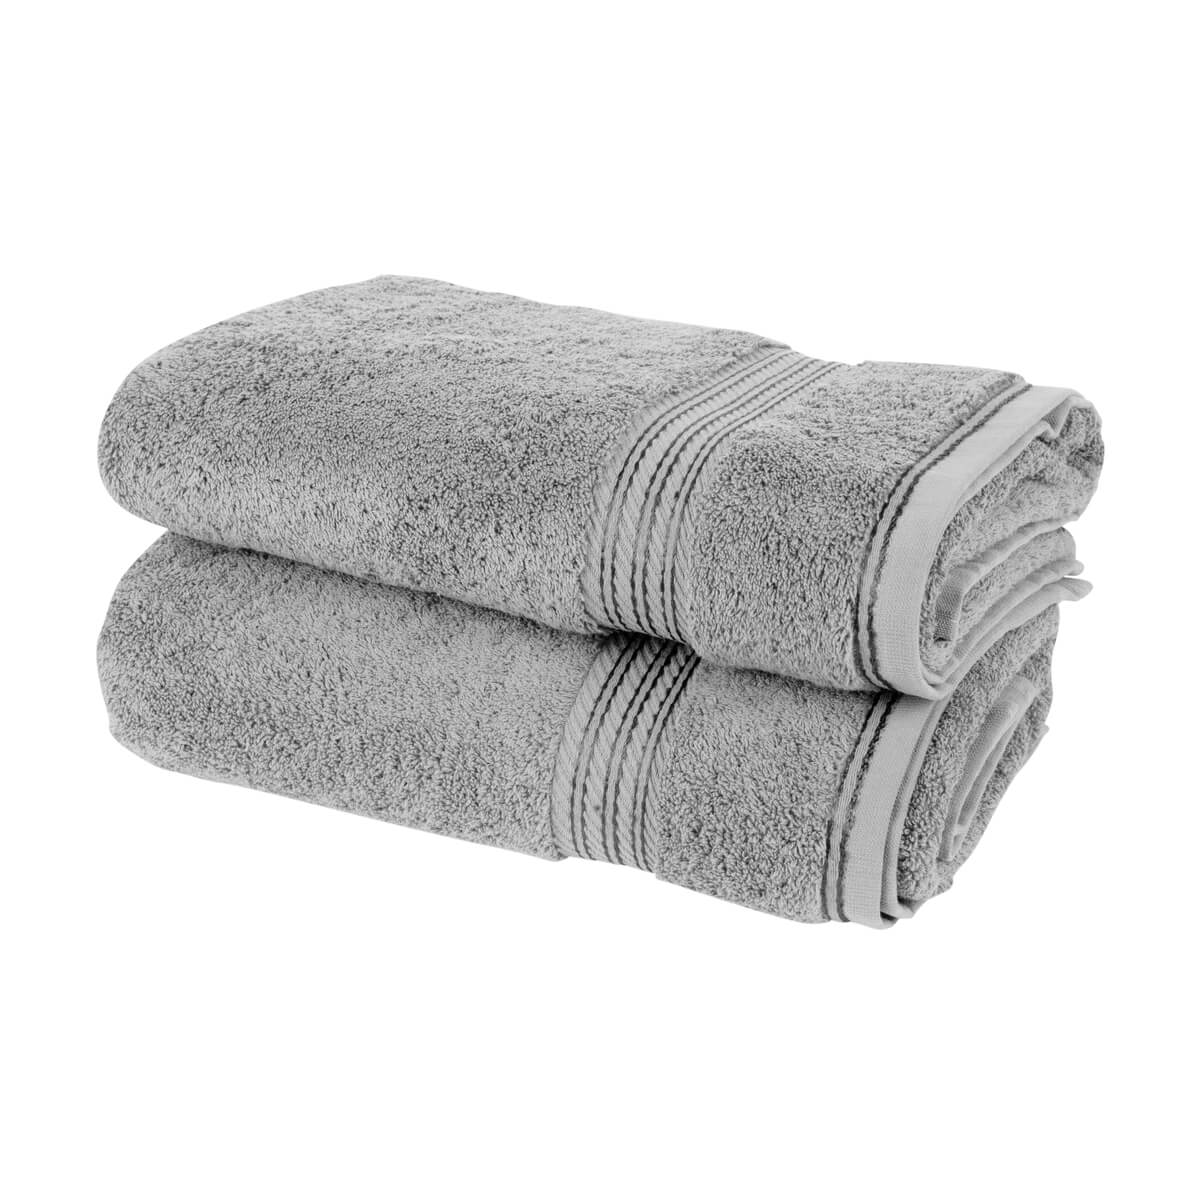 Egyptian Cotton Adult Towel  Towels Bathroom Set Luxury